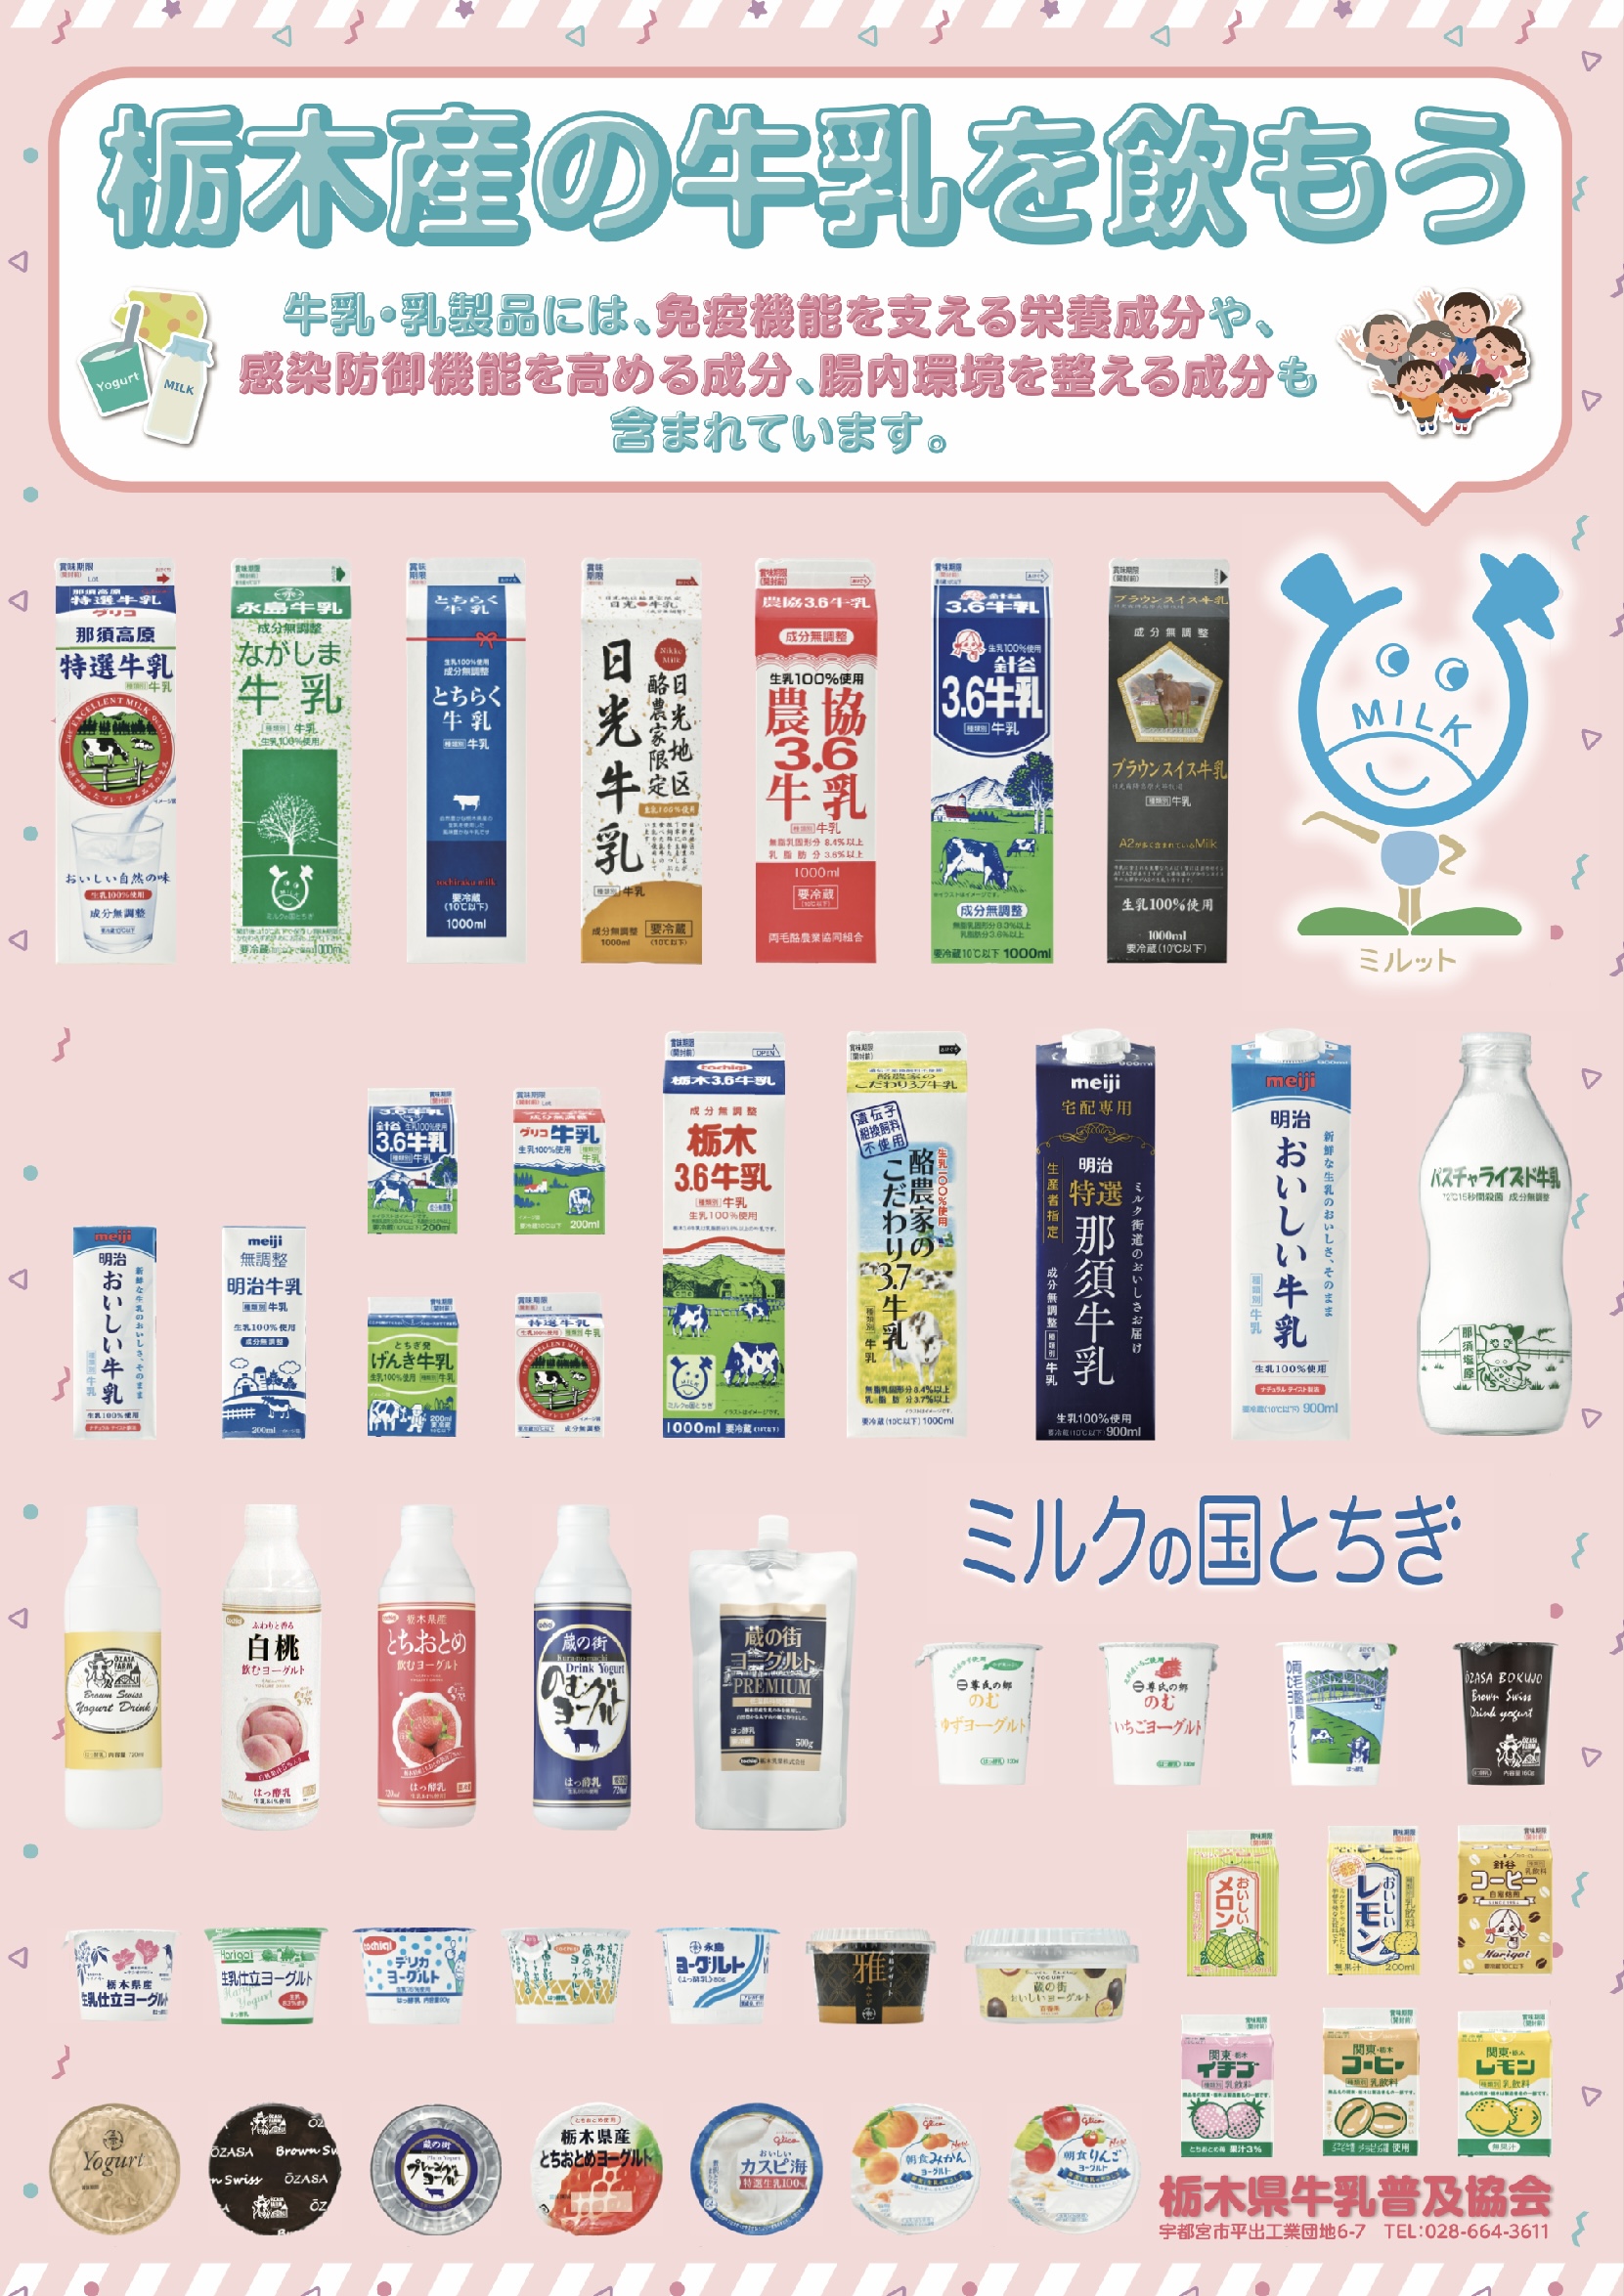 栃木県牛乳普及協会作成のポスター